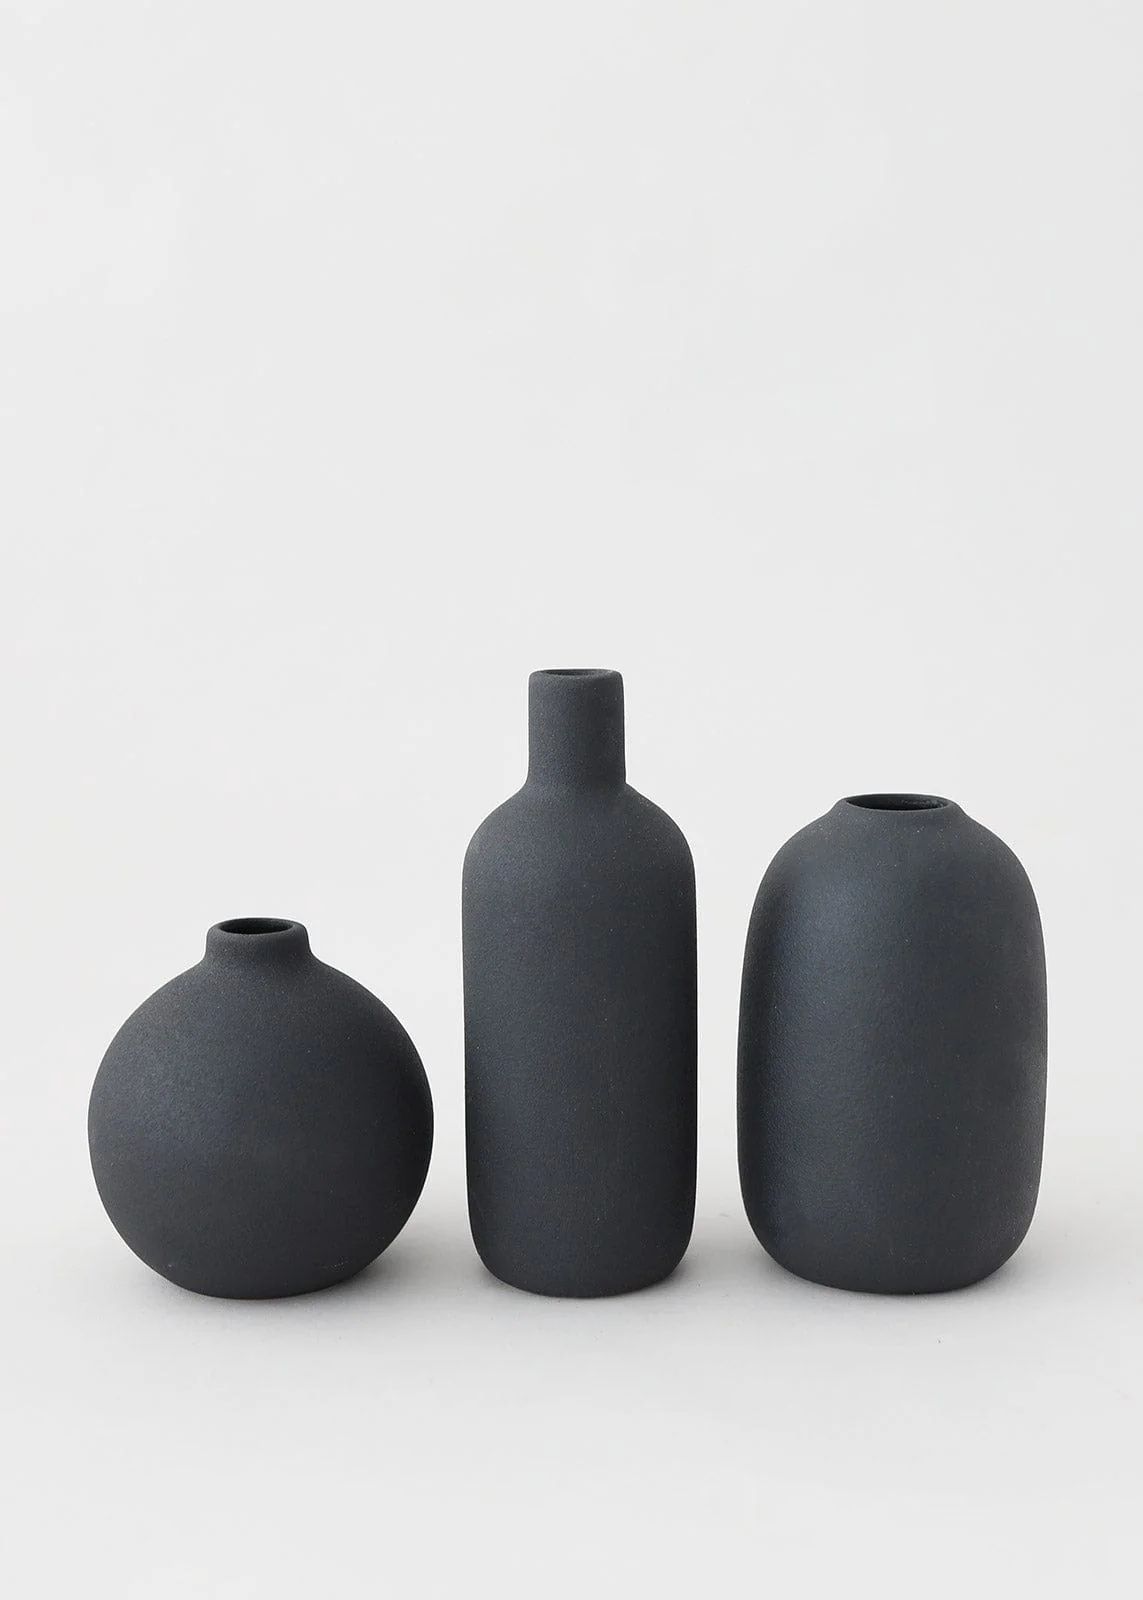 Afloral Set of 3 Matte Black Ceramic Bud Vases - 4.25-7" Tall | Afloral (US)